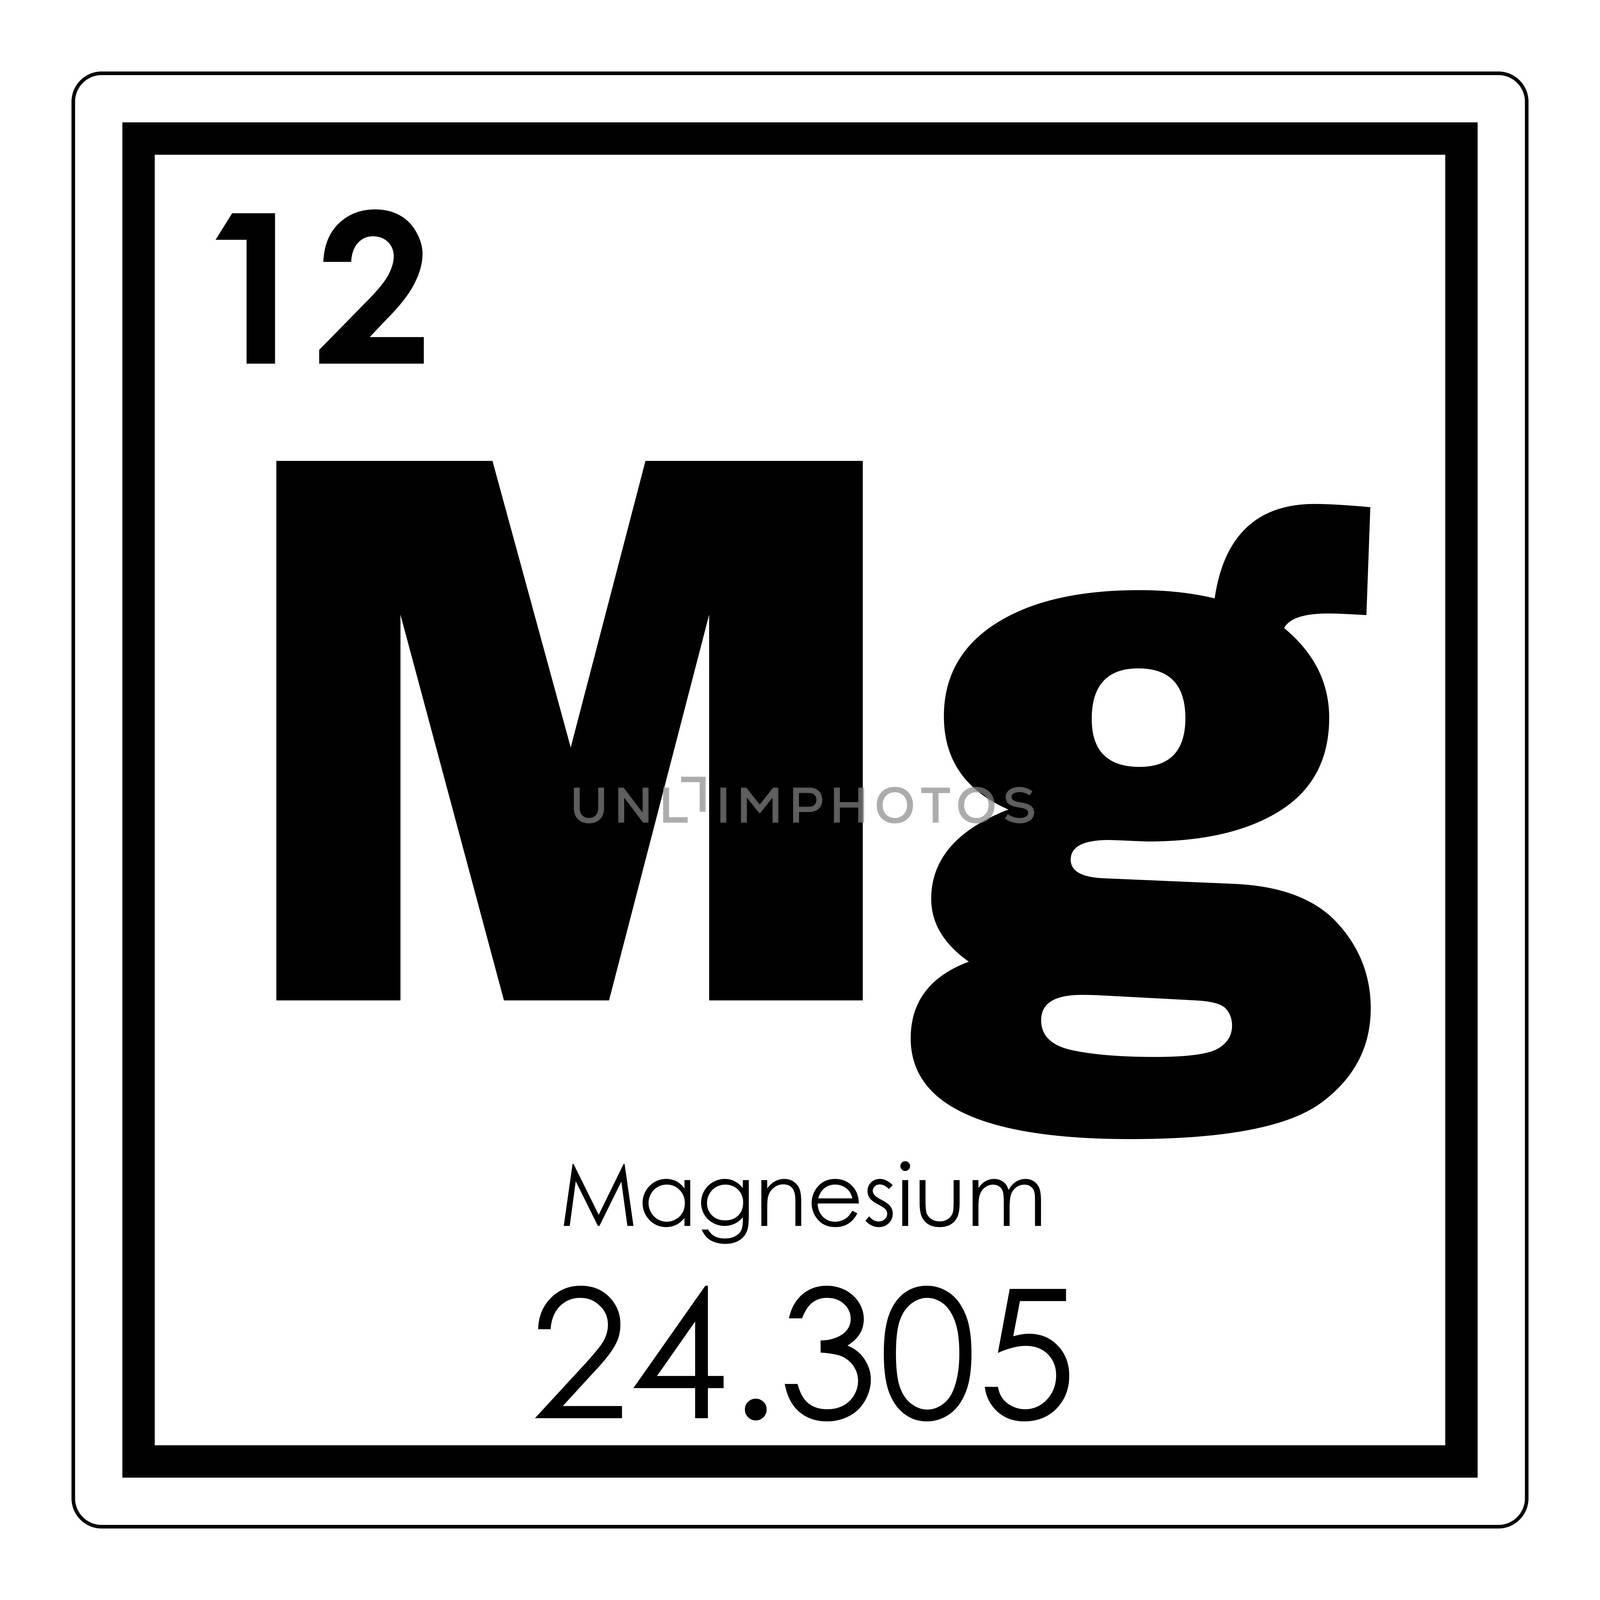 Magnesium chemical element periodic table science symbol